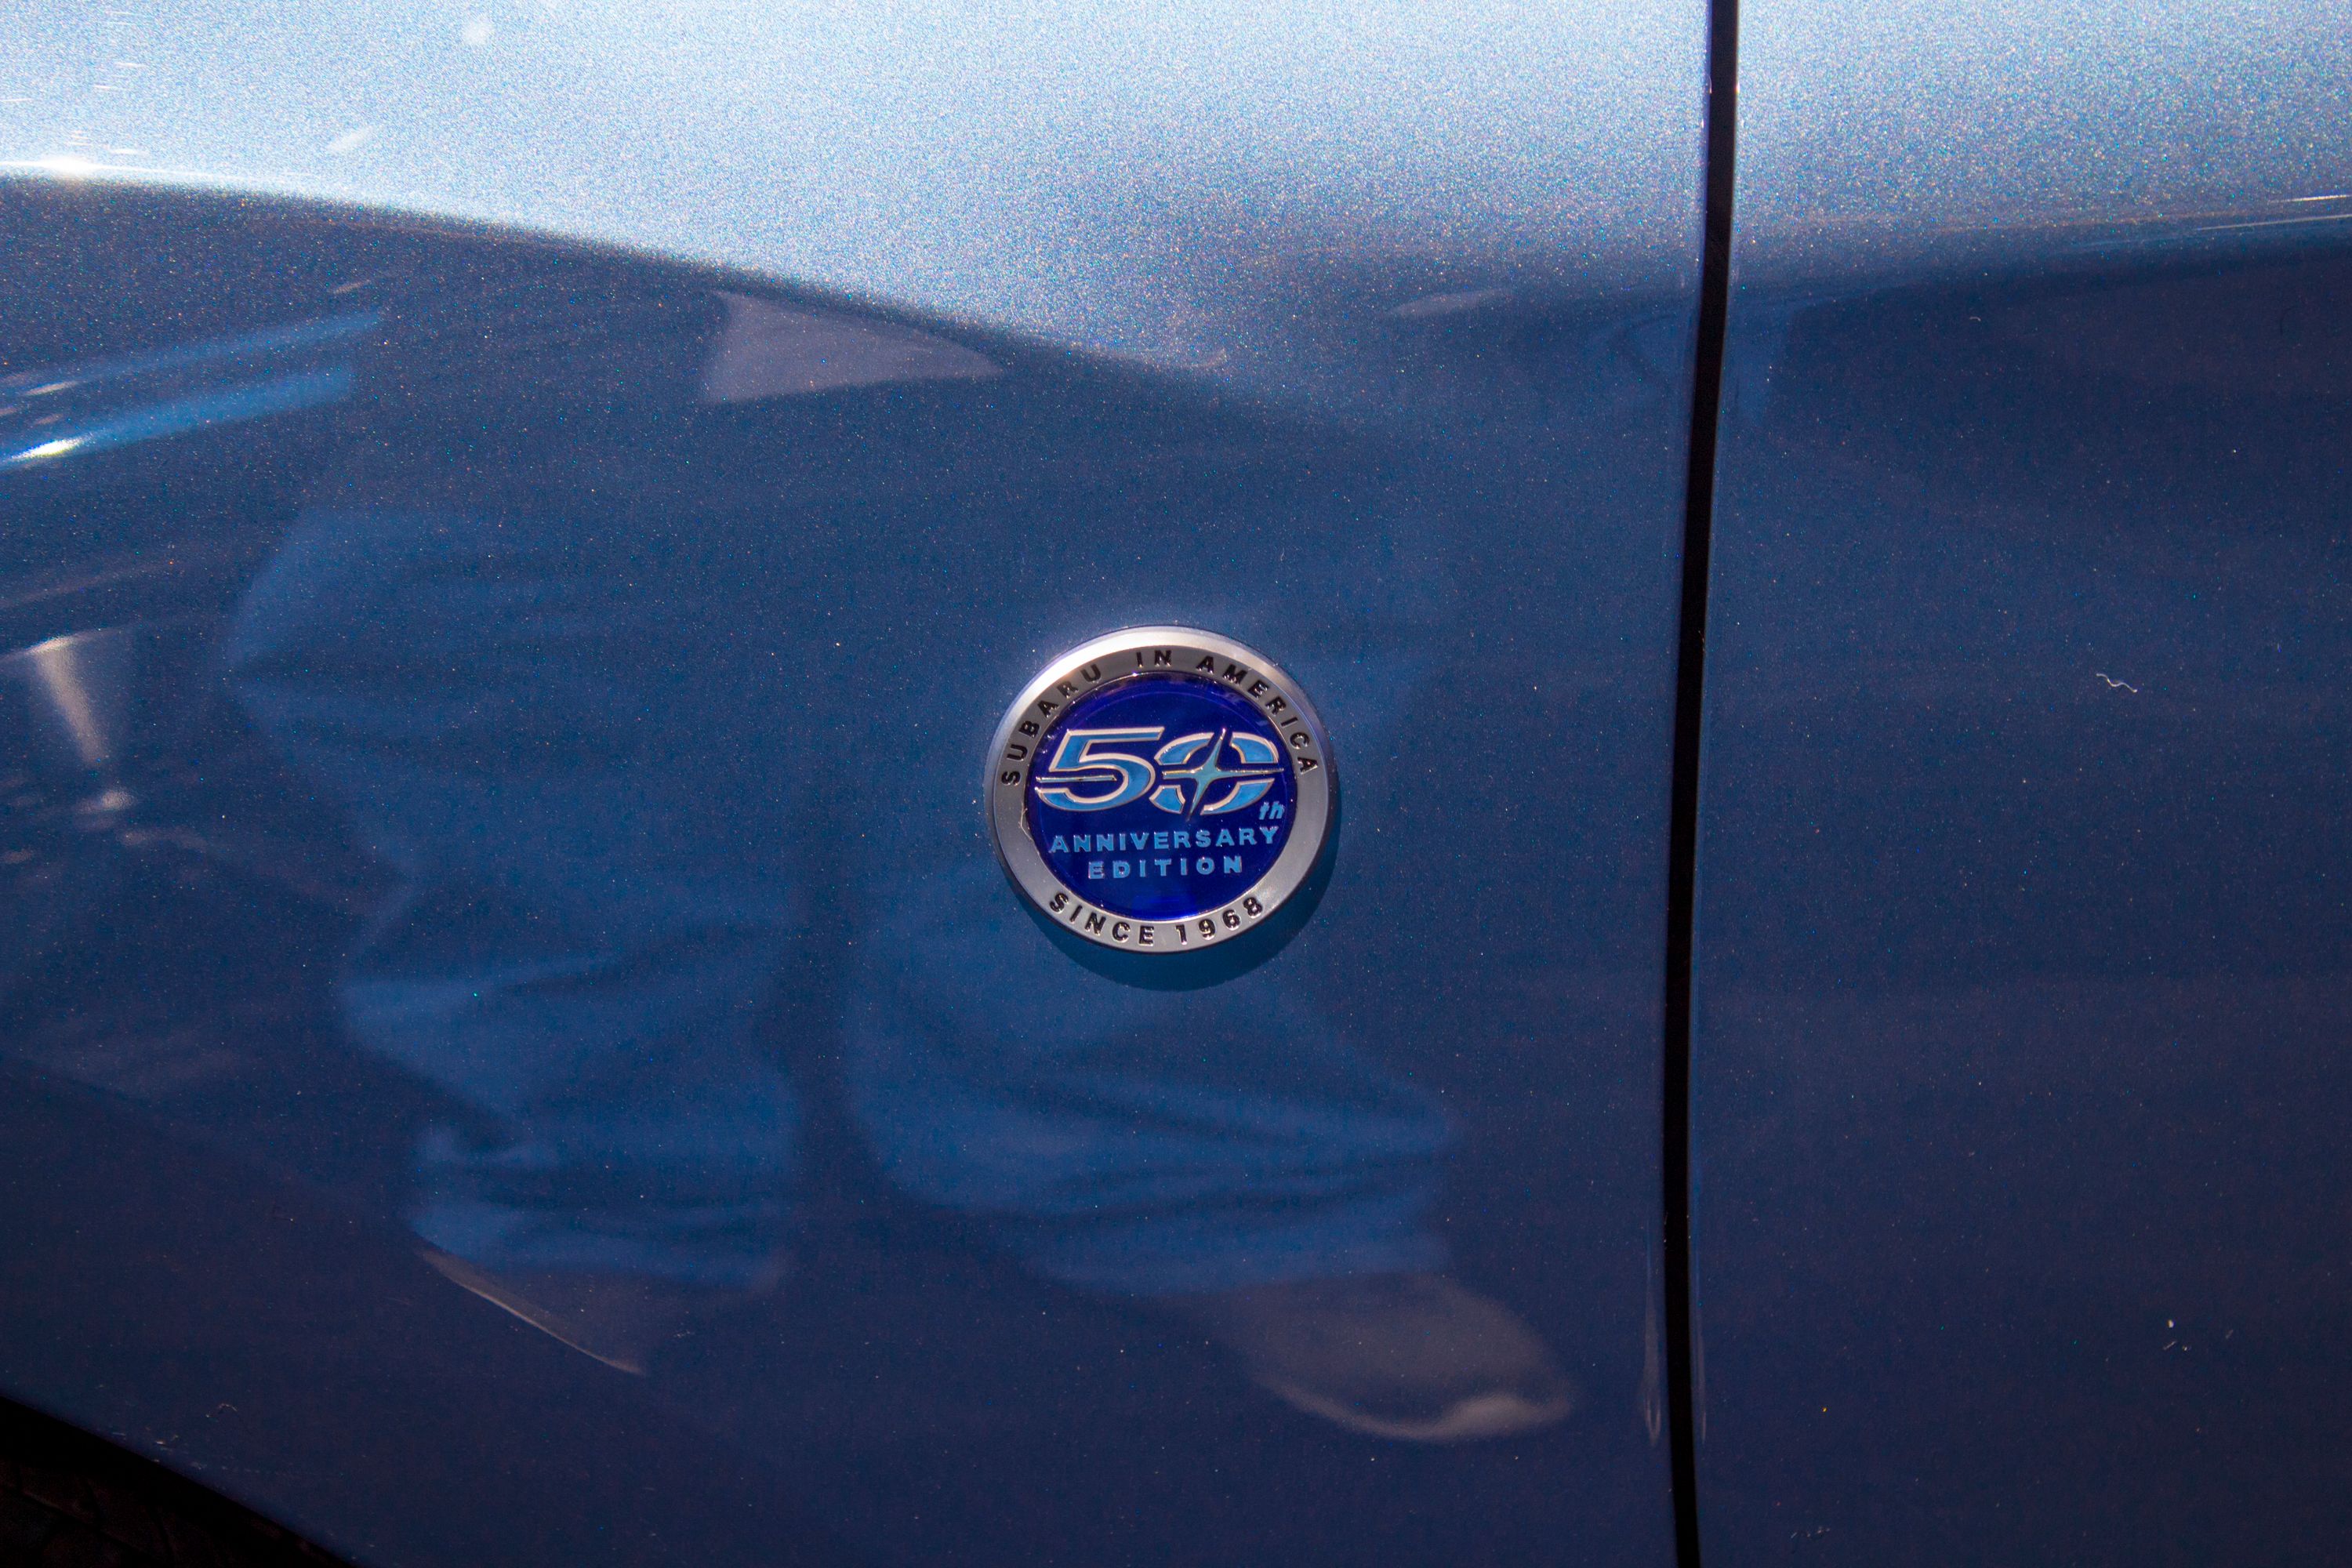 2018 Subaru Impreza 50th Anniversary Edition